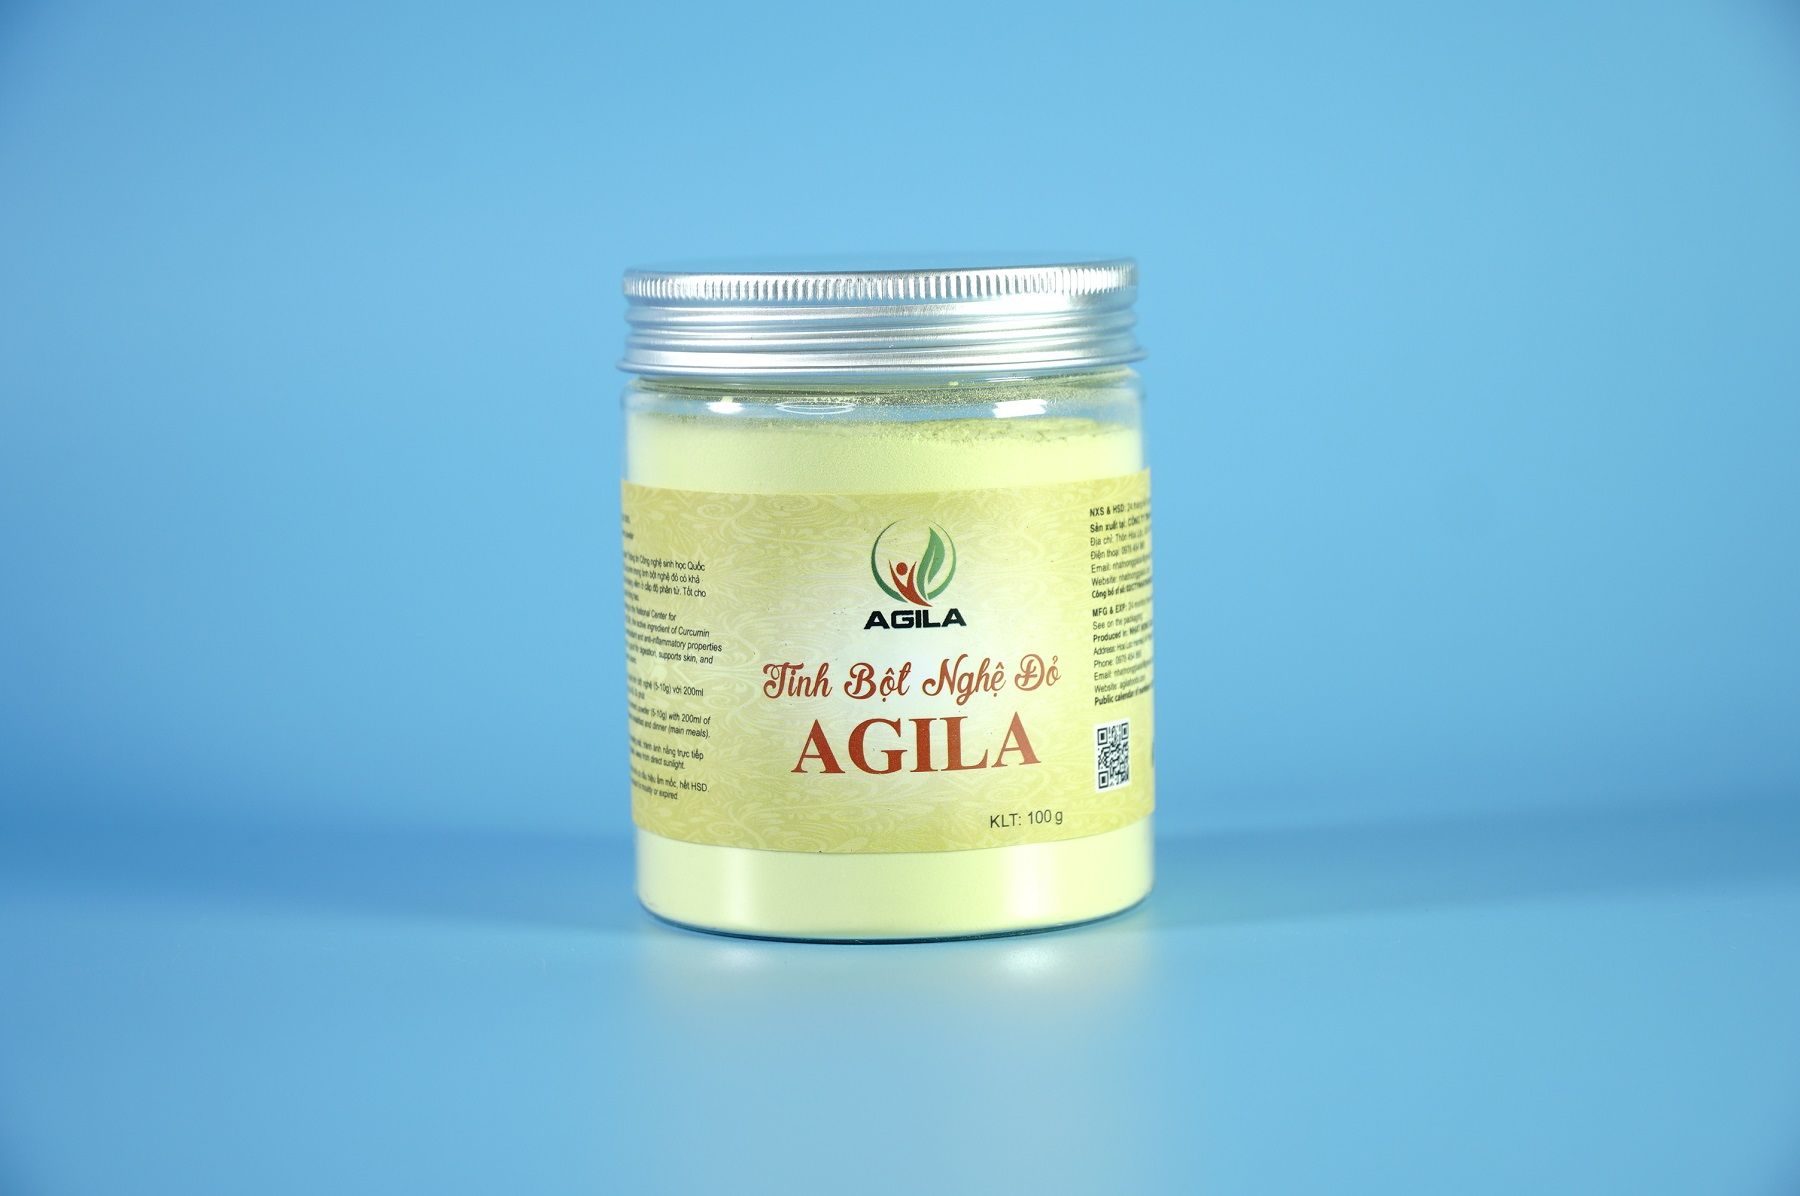  Hộp tinh bột nghệ đỏ AGILA hỗ trợ dạ dày, tiêu hoa & làn da - Hộp 100g 